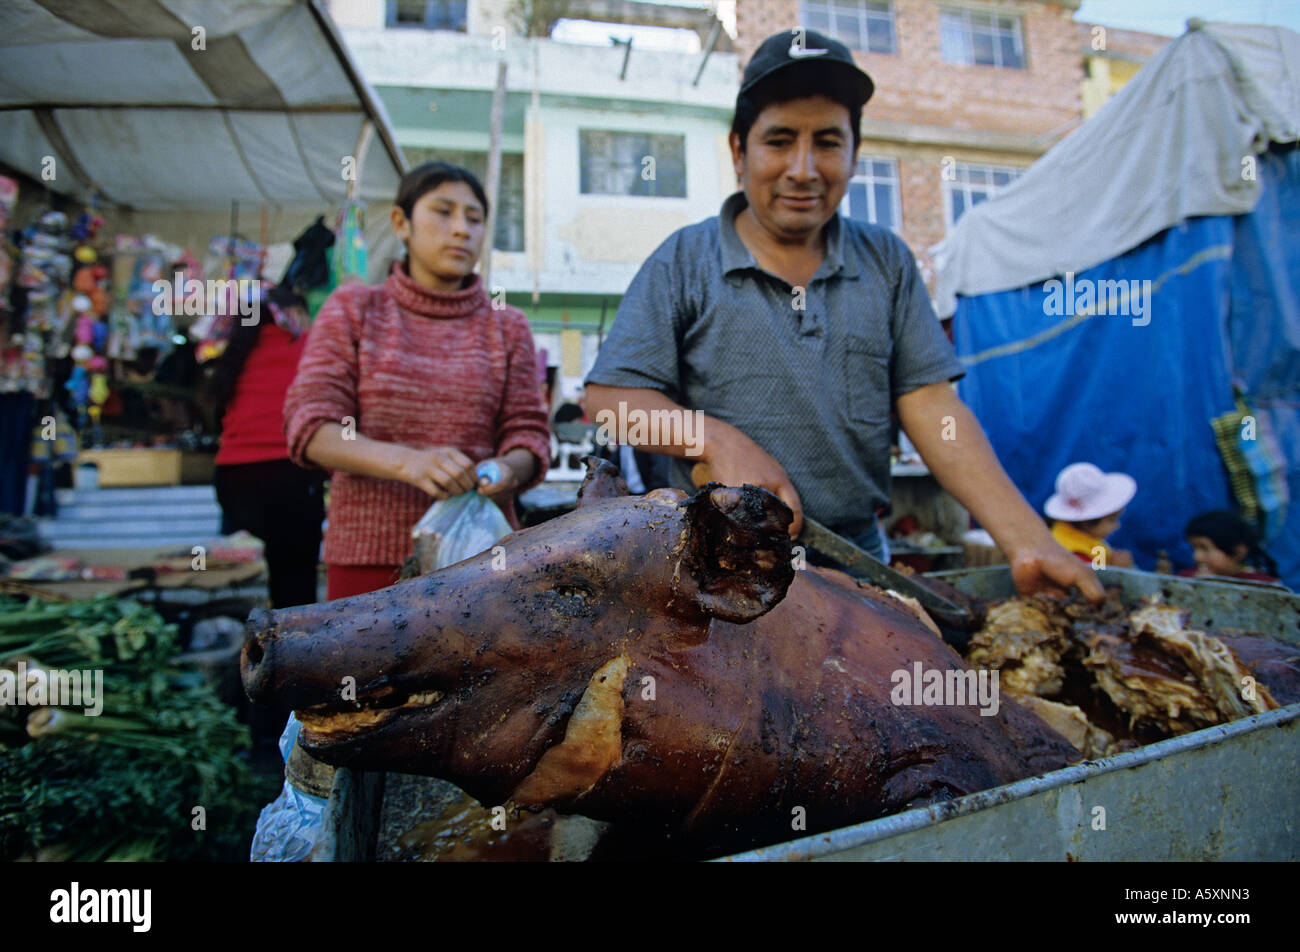 Un maiale alla griglia (Sus scrofa domesticus) sul mercato di Huaraz (Perù). Cochon grillé sur le marché de Huaraz (Pérou). Foto Stock